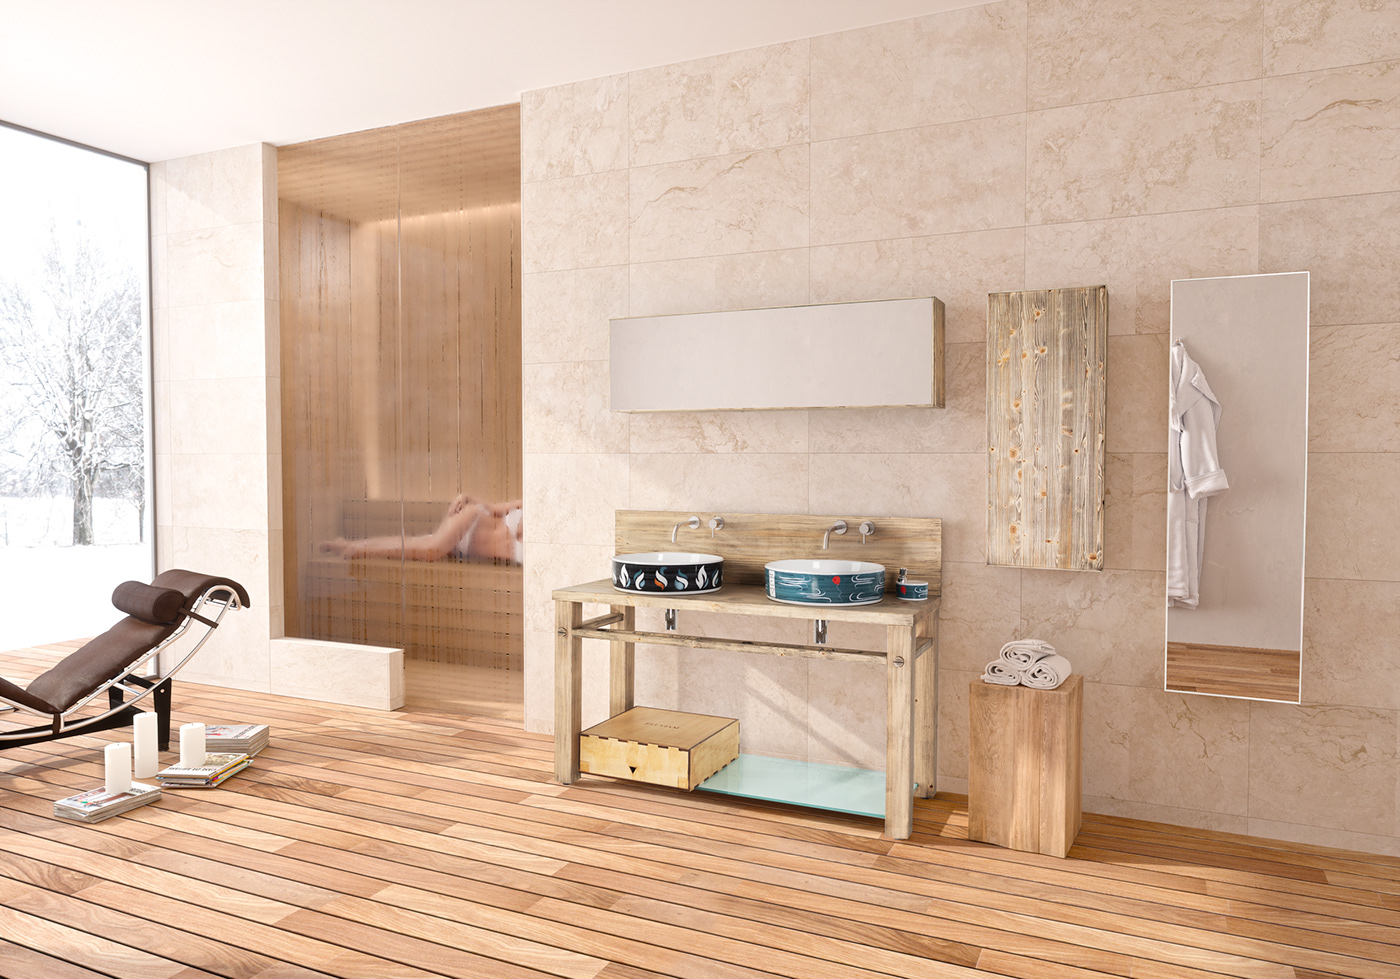 3D photo bathroom design FStorm furniture Real Render visualization